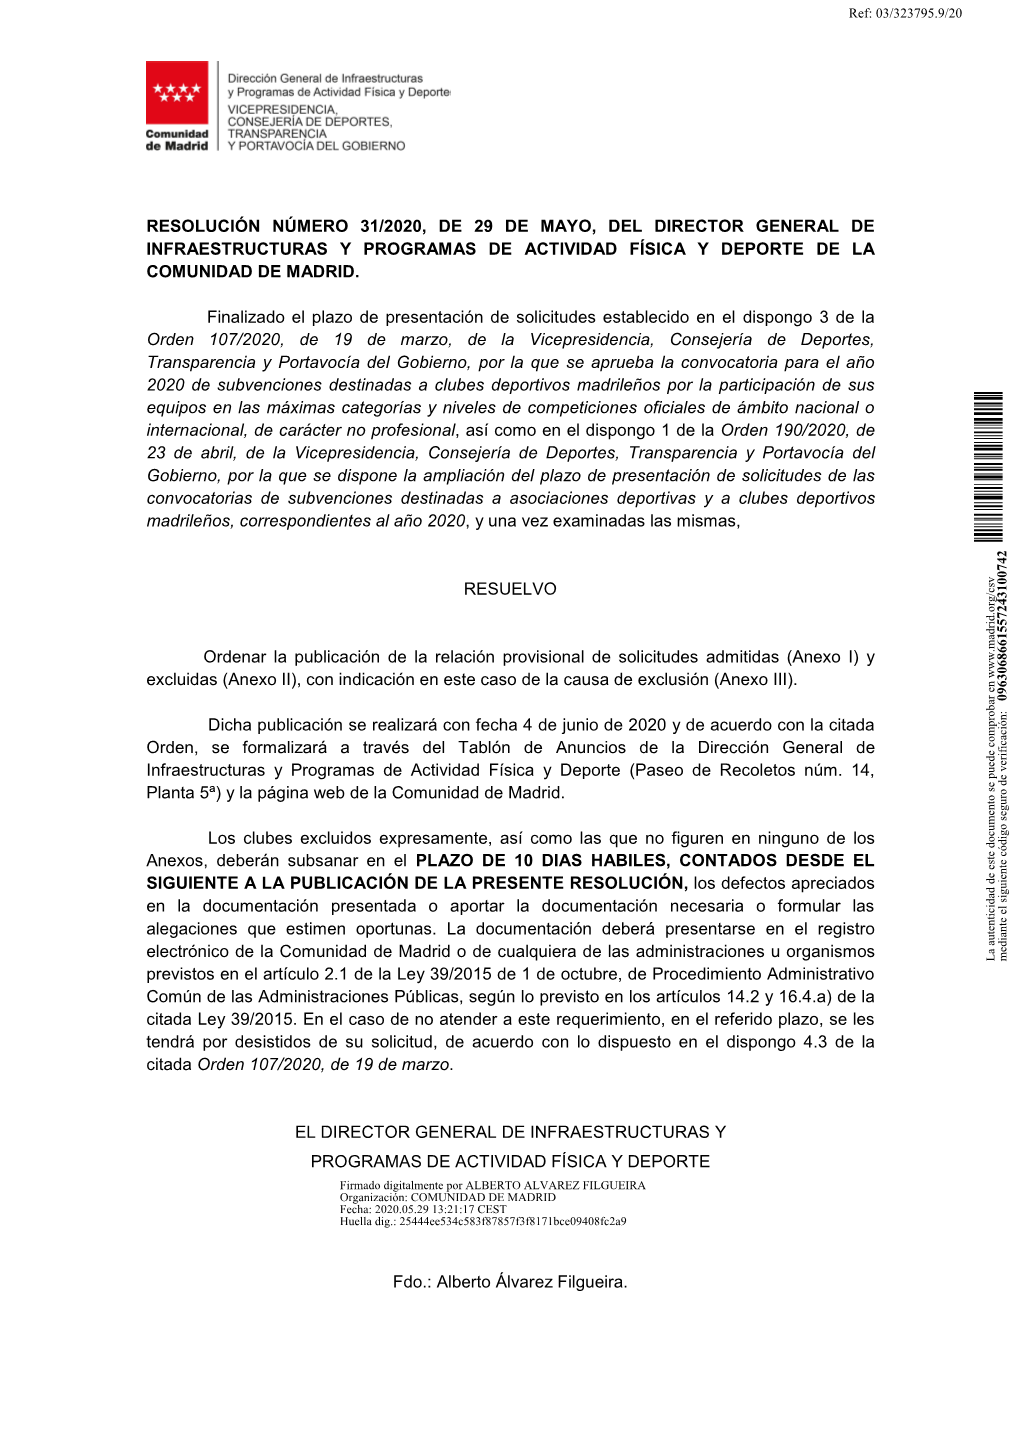 Resolución Número 31/2020, De 29 De Mayo, Del Director General De Infraestructuras Y Programas De Actividad Física Y Deporte De La Comunidad De Madrid